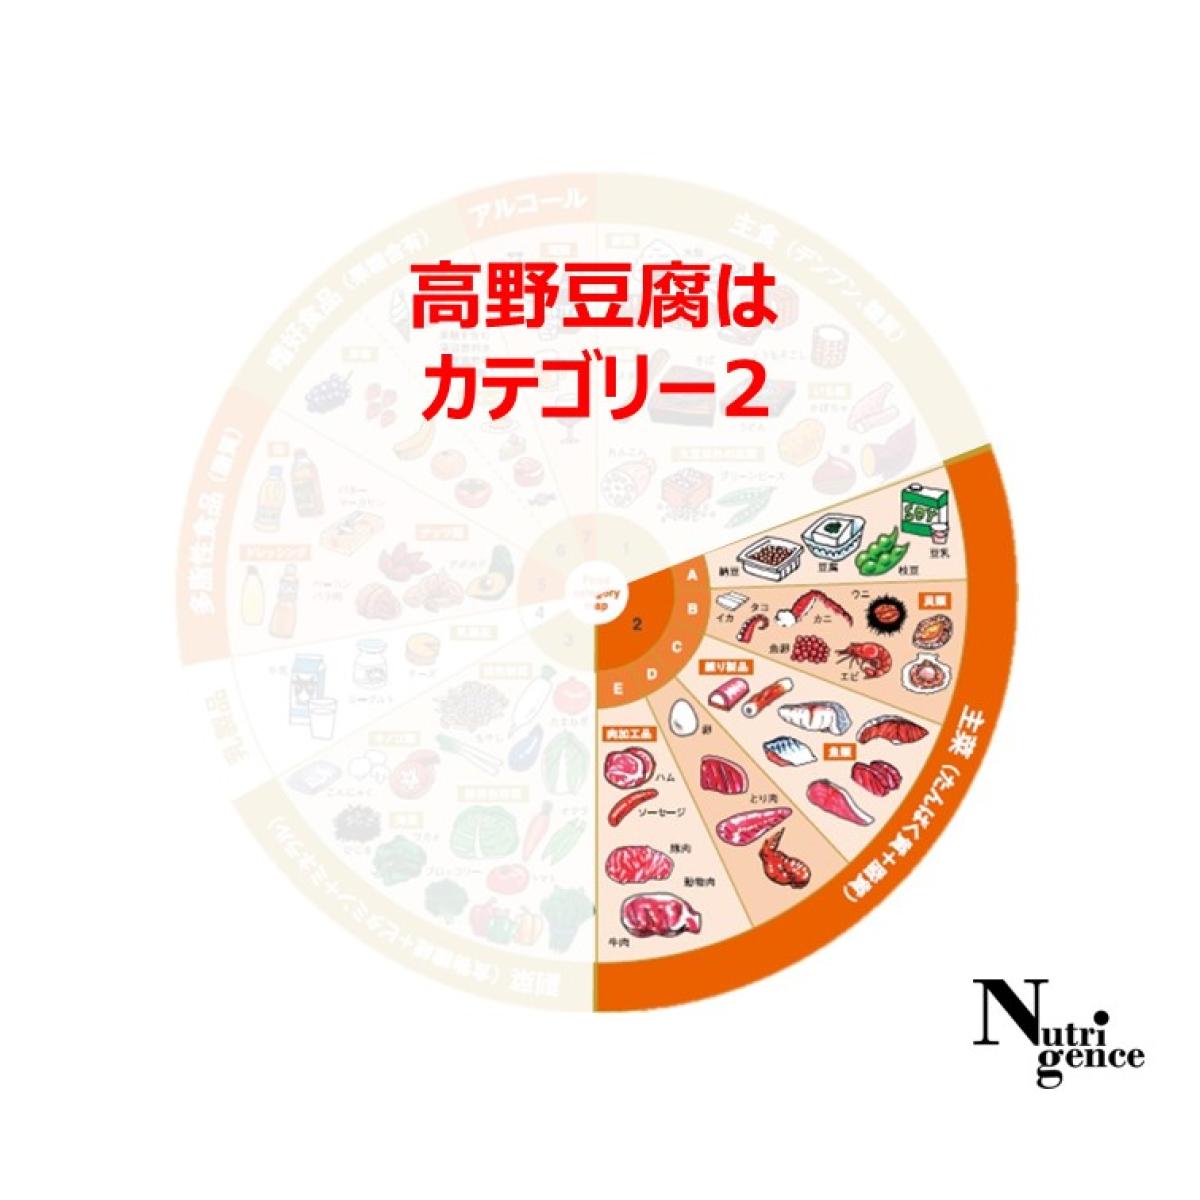 高野豆腐は食品カテゴリーマップのカテゴリー2に分類、カテゴリー2はたんぱく質と脂質を含む食品が該当